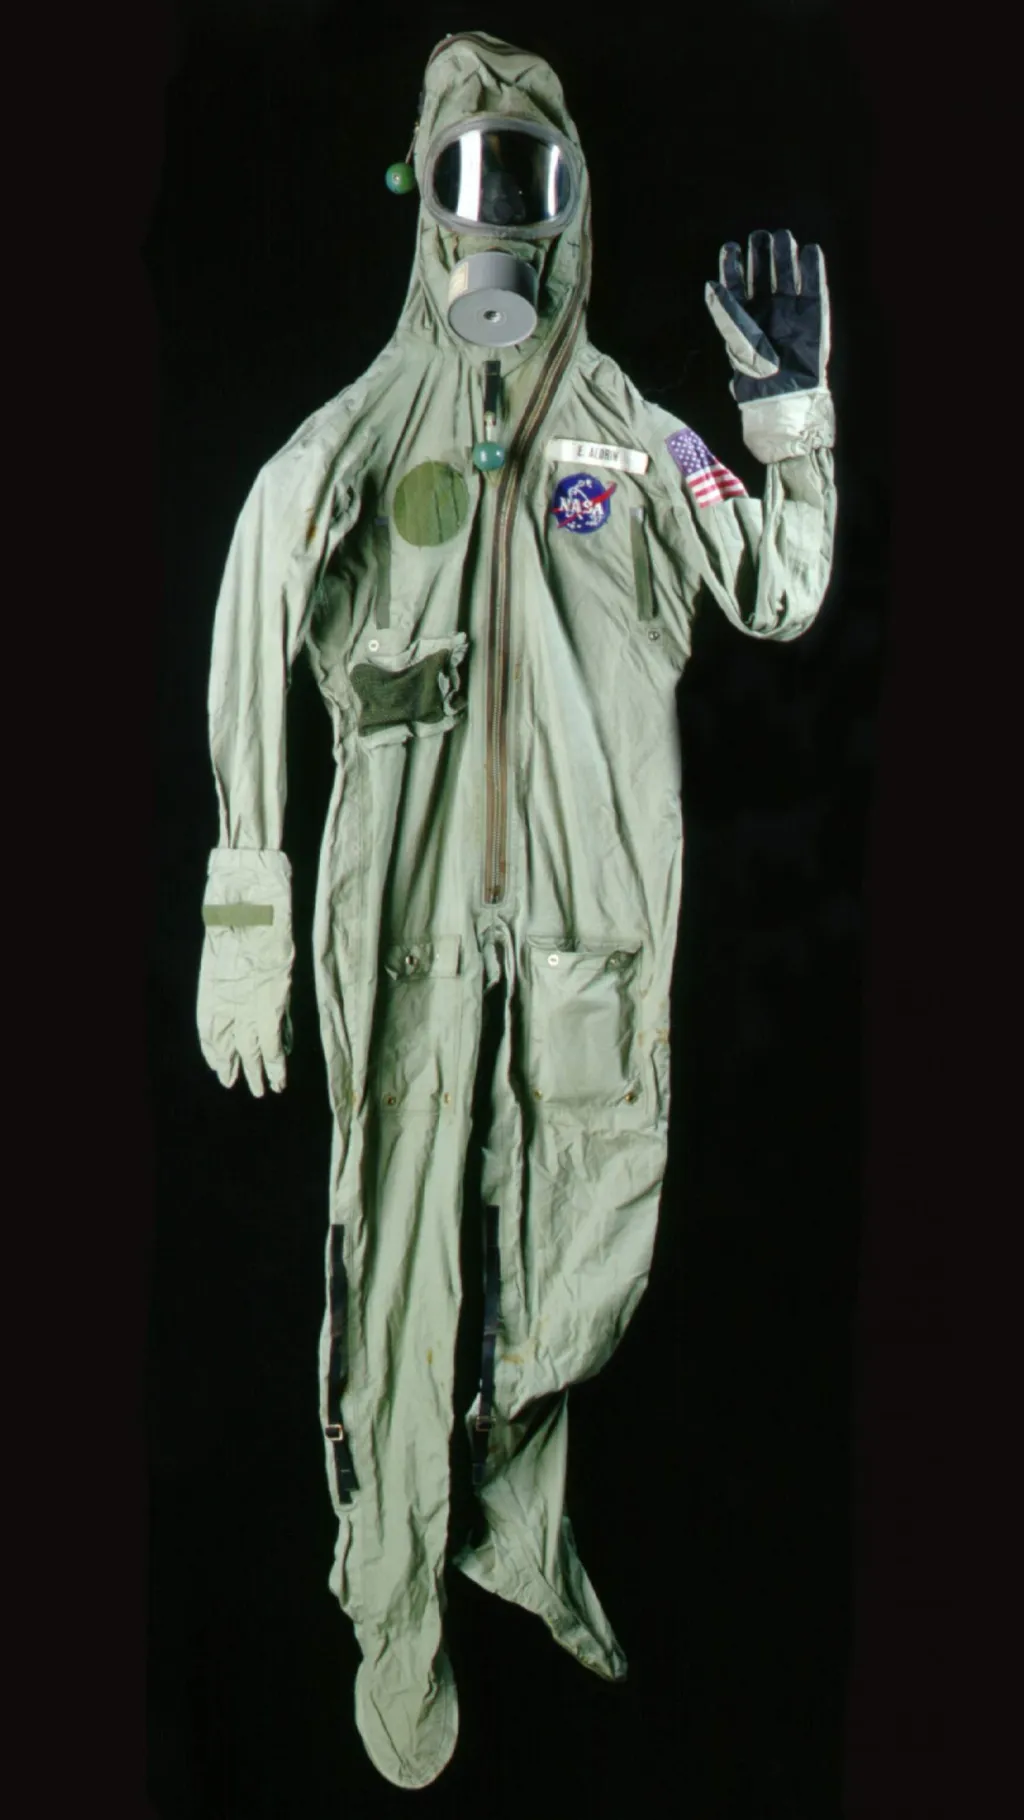 Speciální oděv, který astronauti oblékali před zpětným vstupem na zemský povrch. Nebylo známo, zda měsíc neobsahuje nějakou formou mimozemského života.